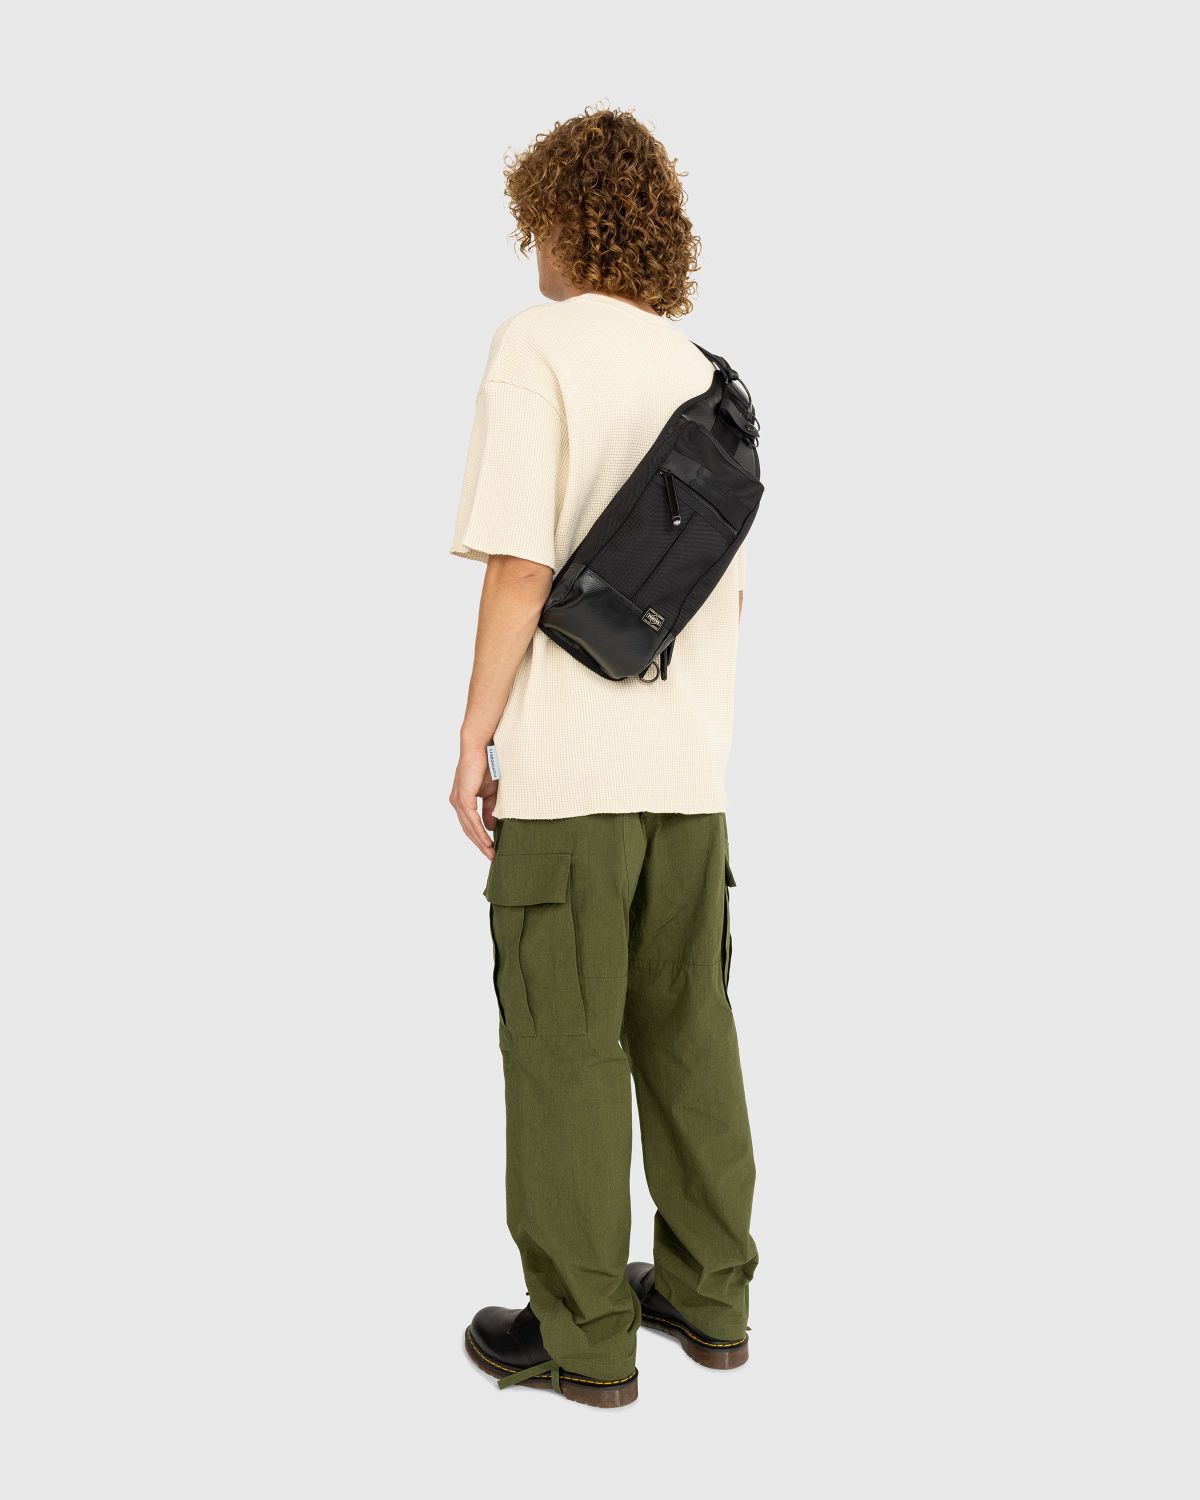 Porter-Yoshida & Co. – Heat Sling Shoulder Bag Black